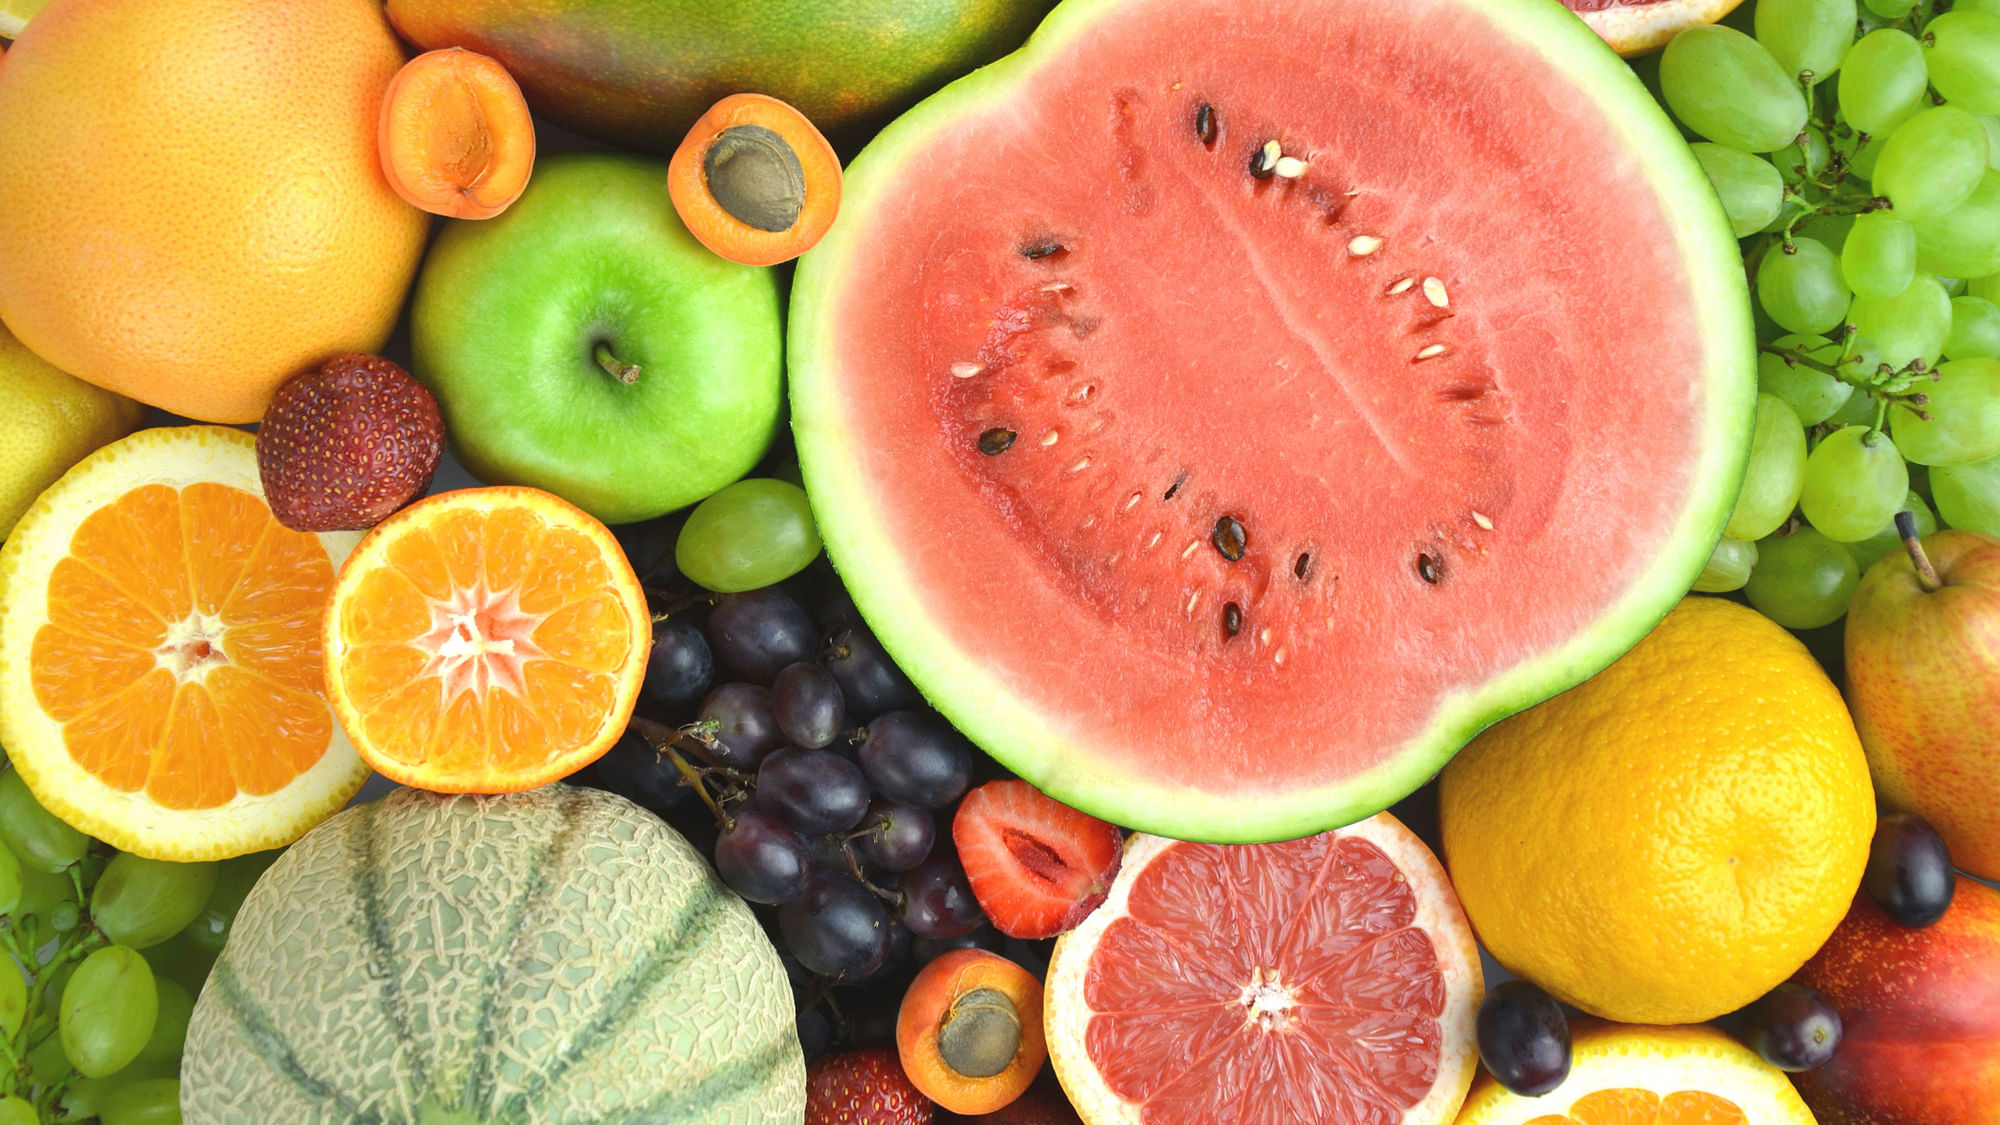 फलों से न सिर्फ नैचुरल शुगर मिलता है, बल्कि इनमें विटामिन, मिनरल्स और फाइबर भी भरपूर मात्रा में पाए जाते हैं